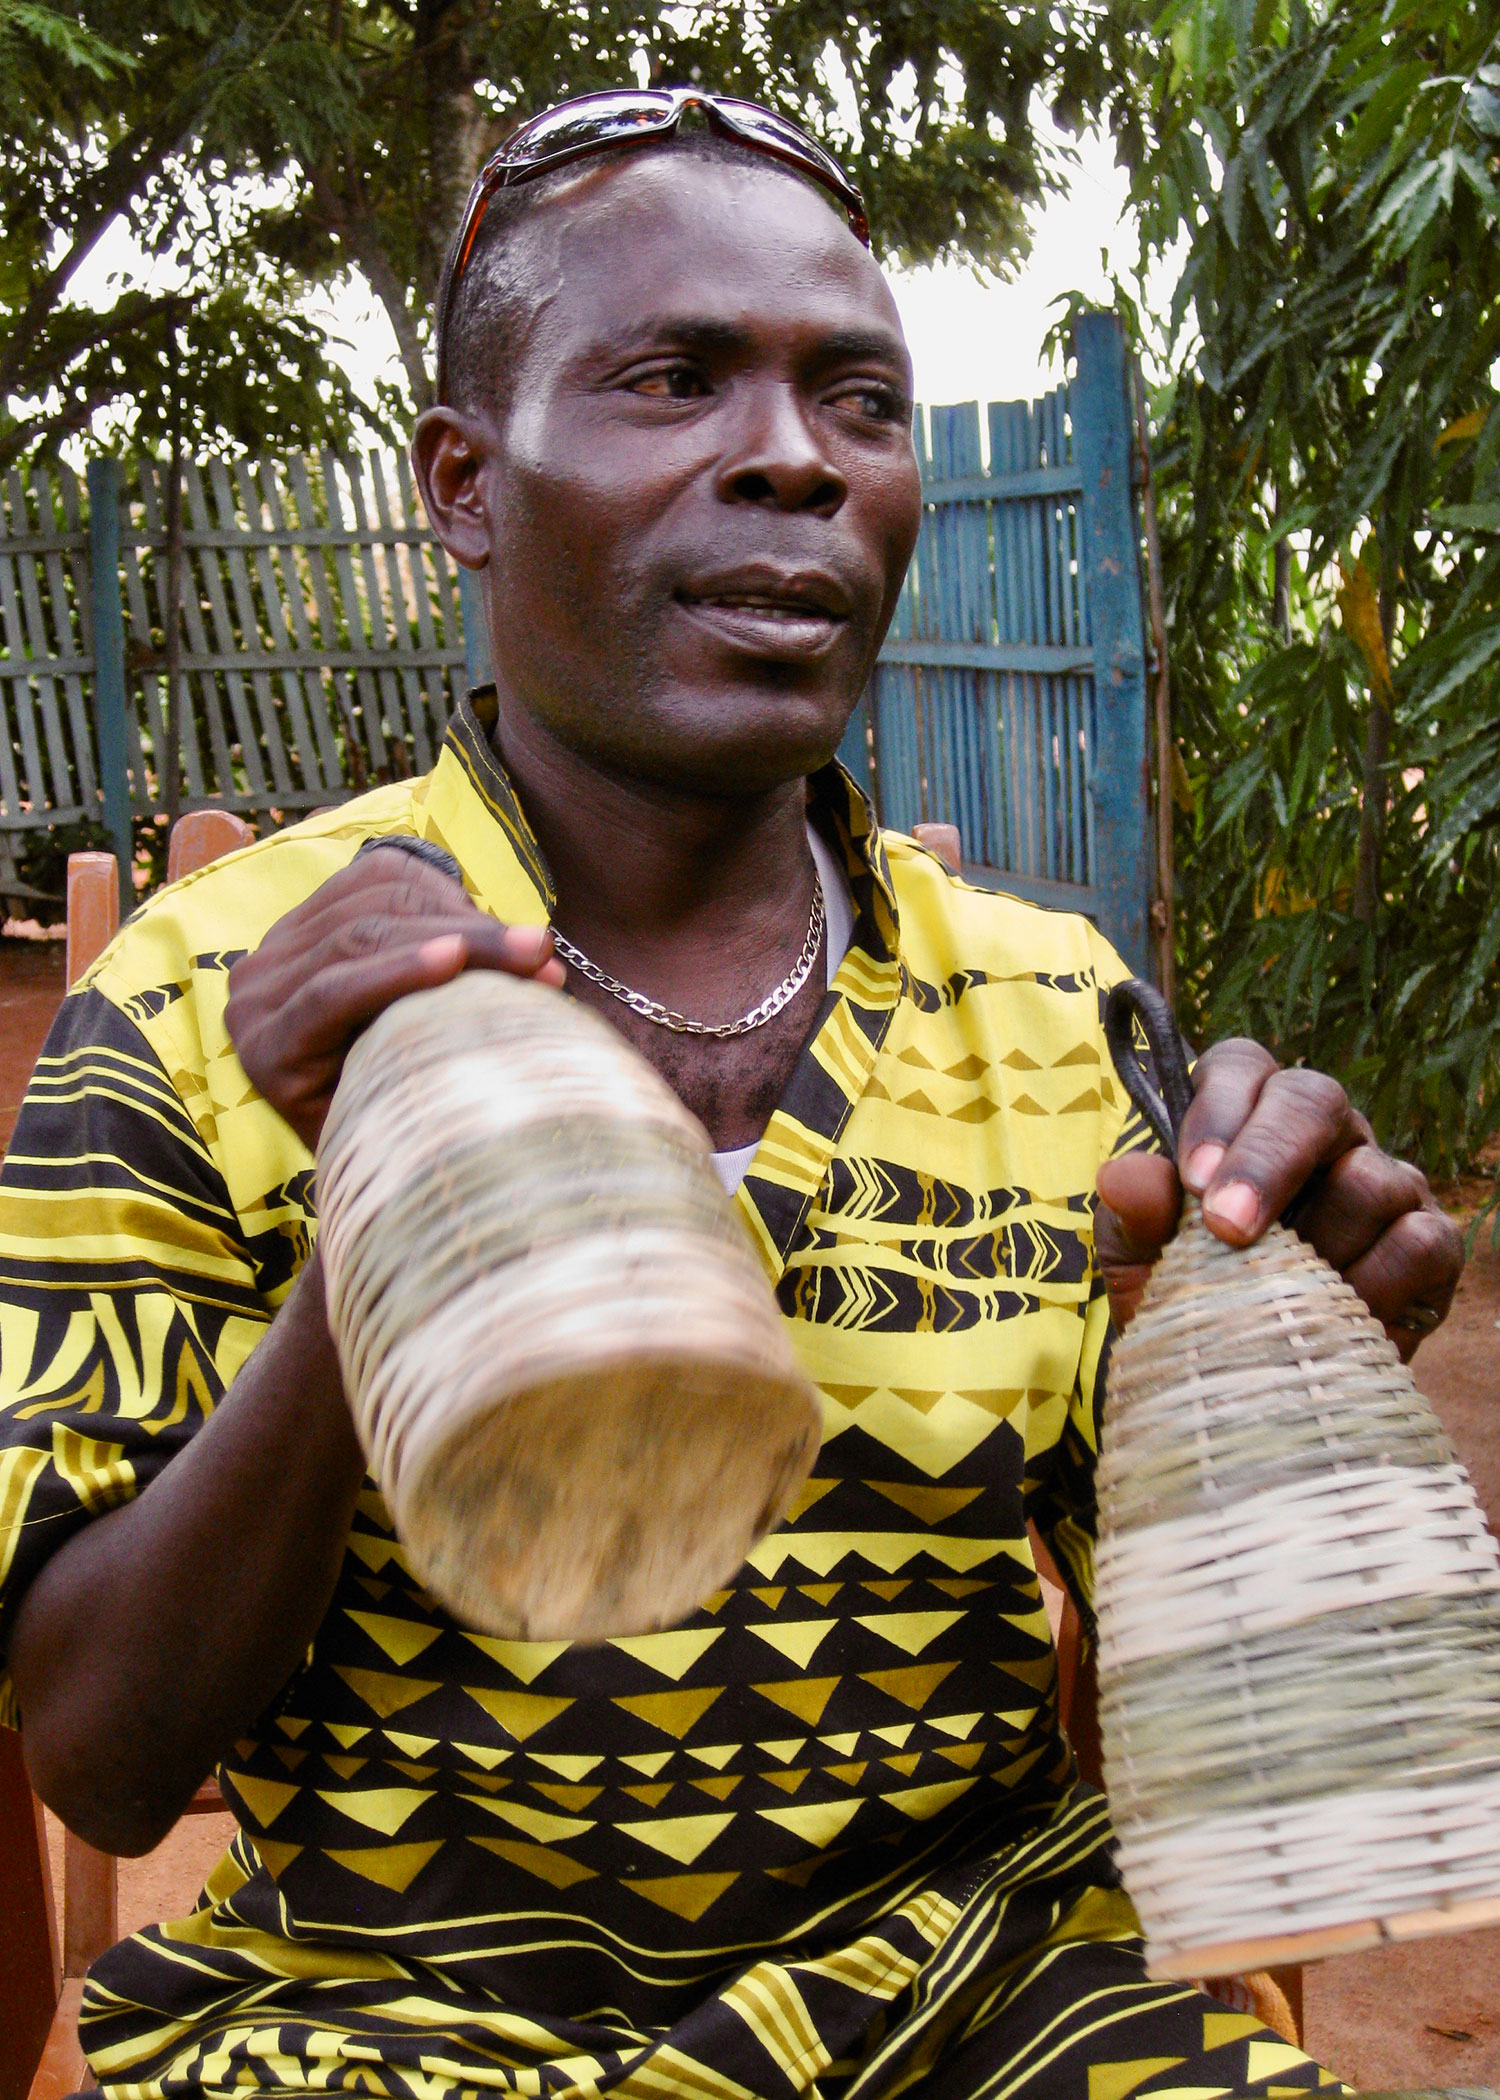 Bernard "Solar" Kwashie, image by Brian Jeffery